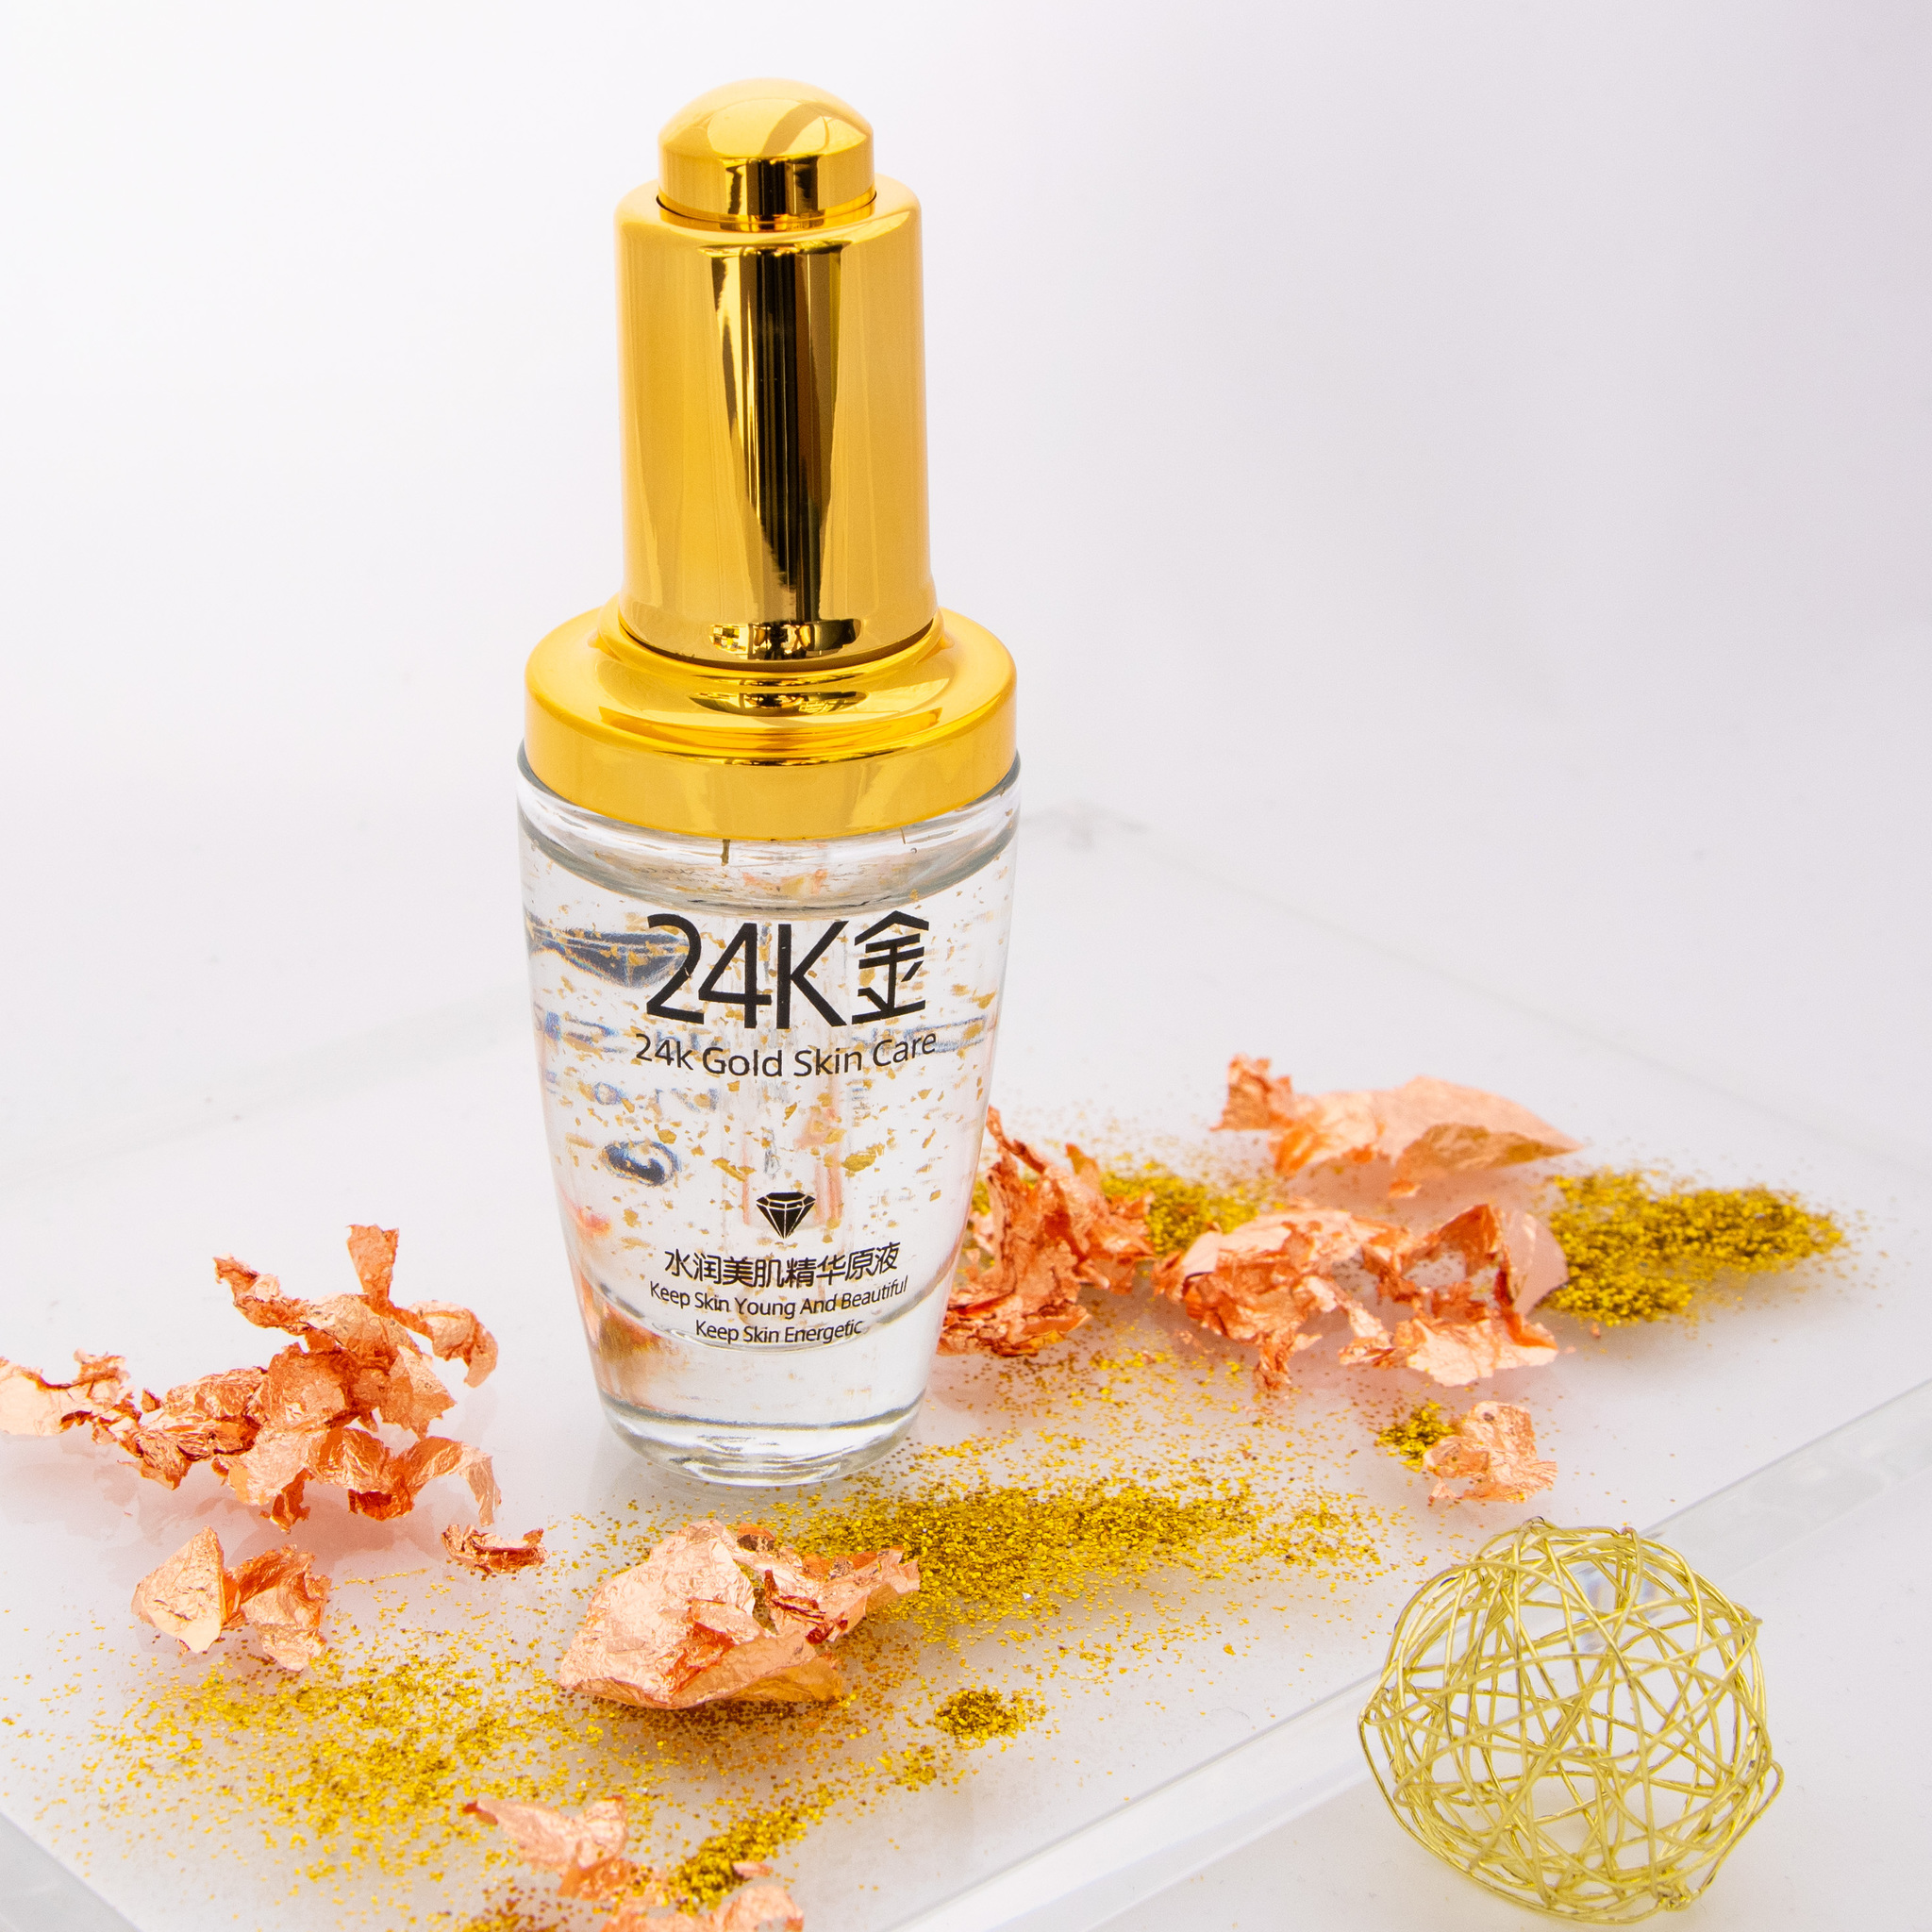 Сыворотка с частичками золота 24K для лица омолаживающая Gold Skin Care